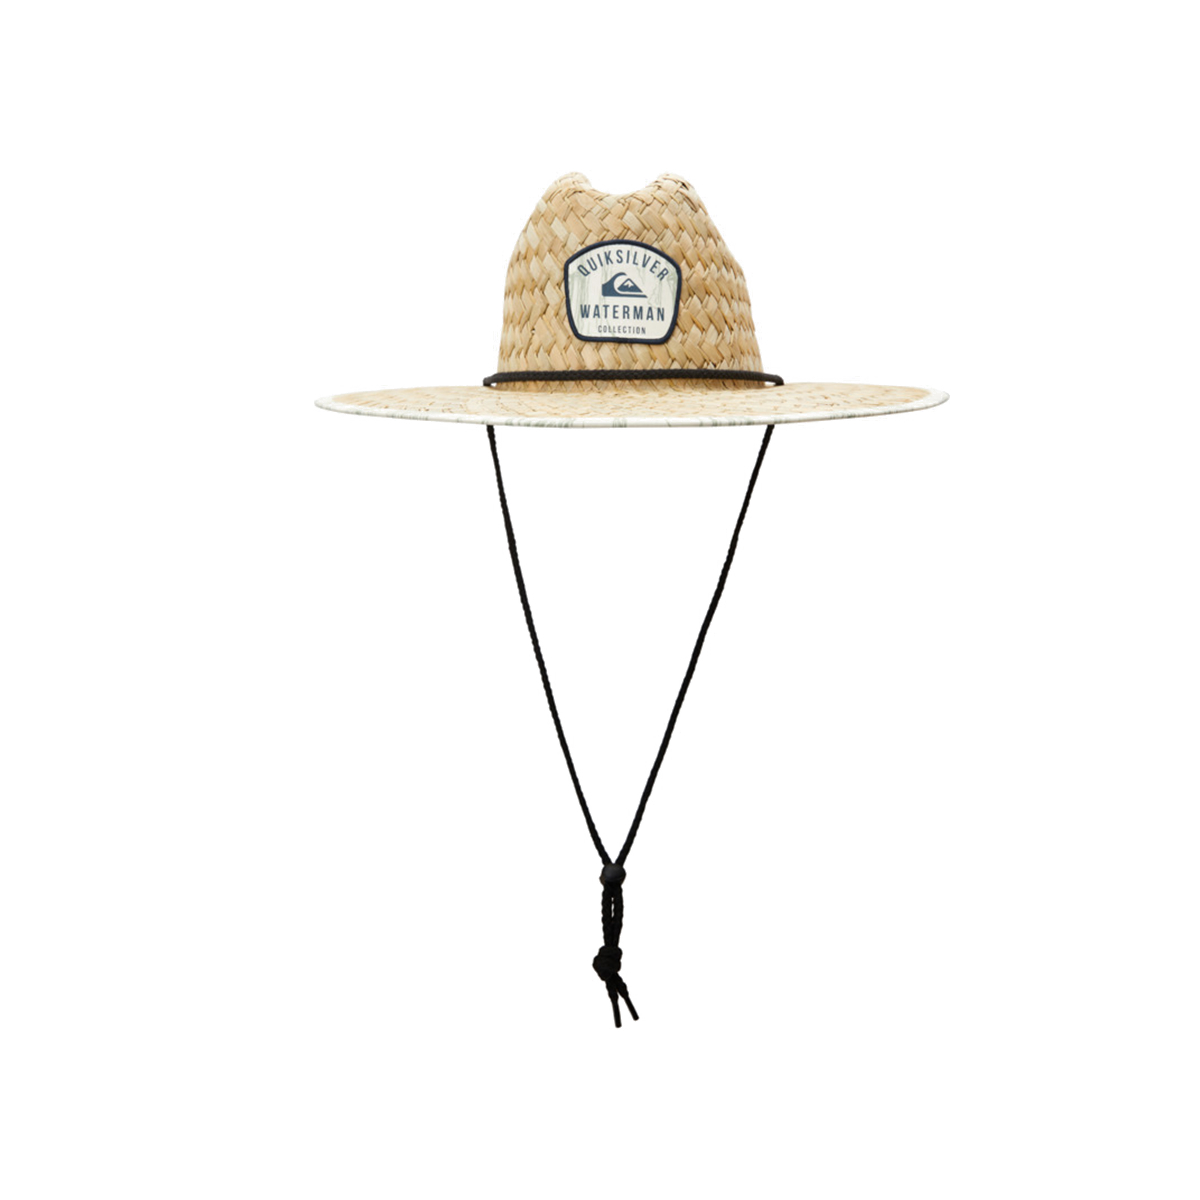 Waterman Outsider Straw Lifeguard Hat